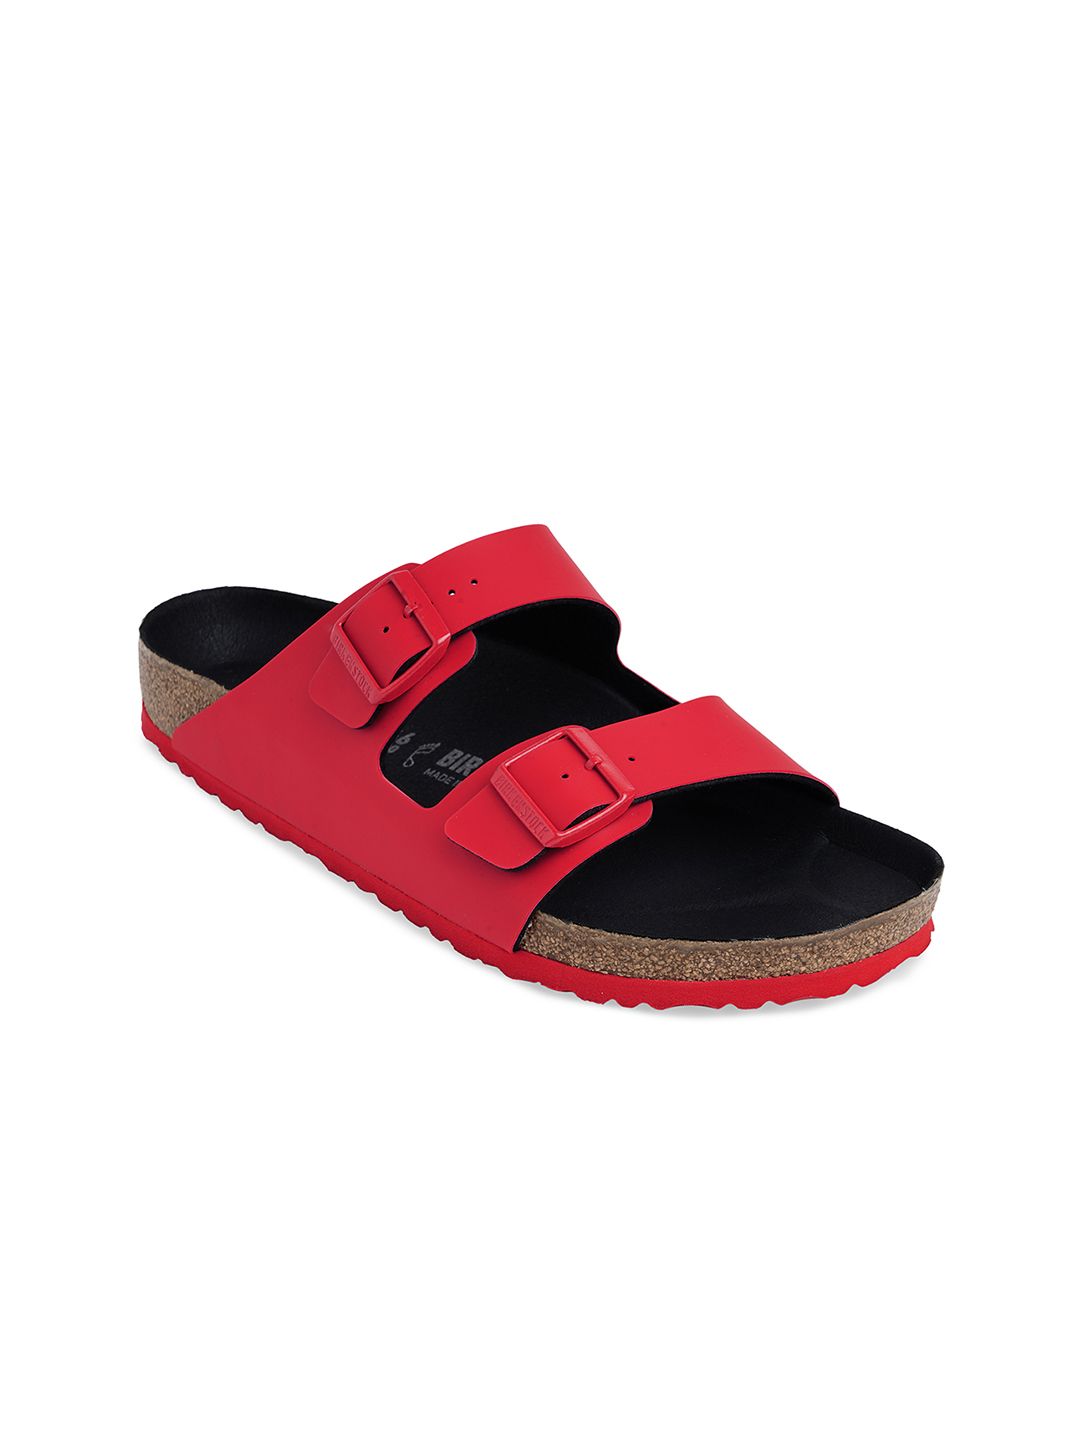 Birkenstock Unisex Red Icy Active Arizona Slide Sandals Price in India